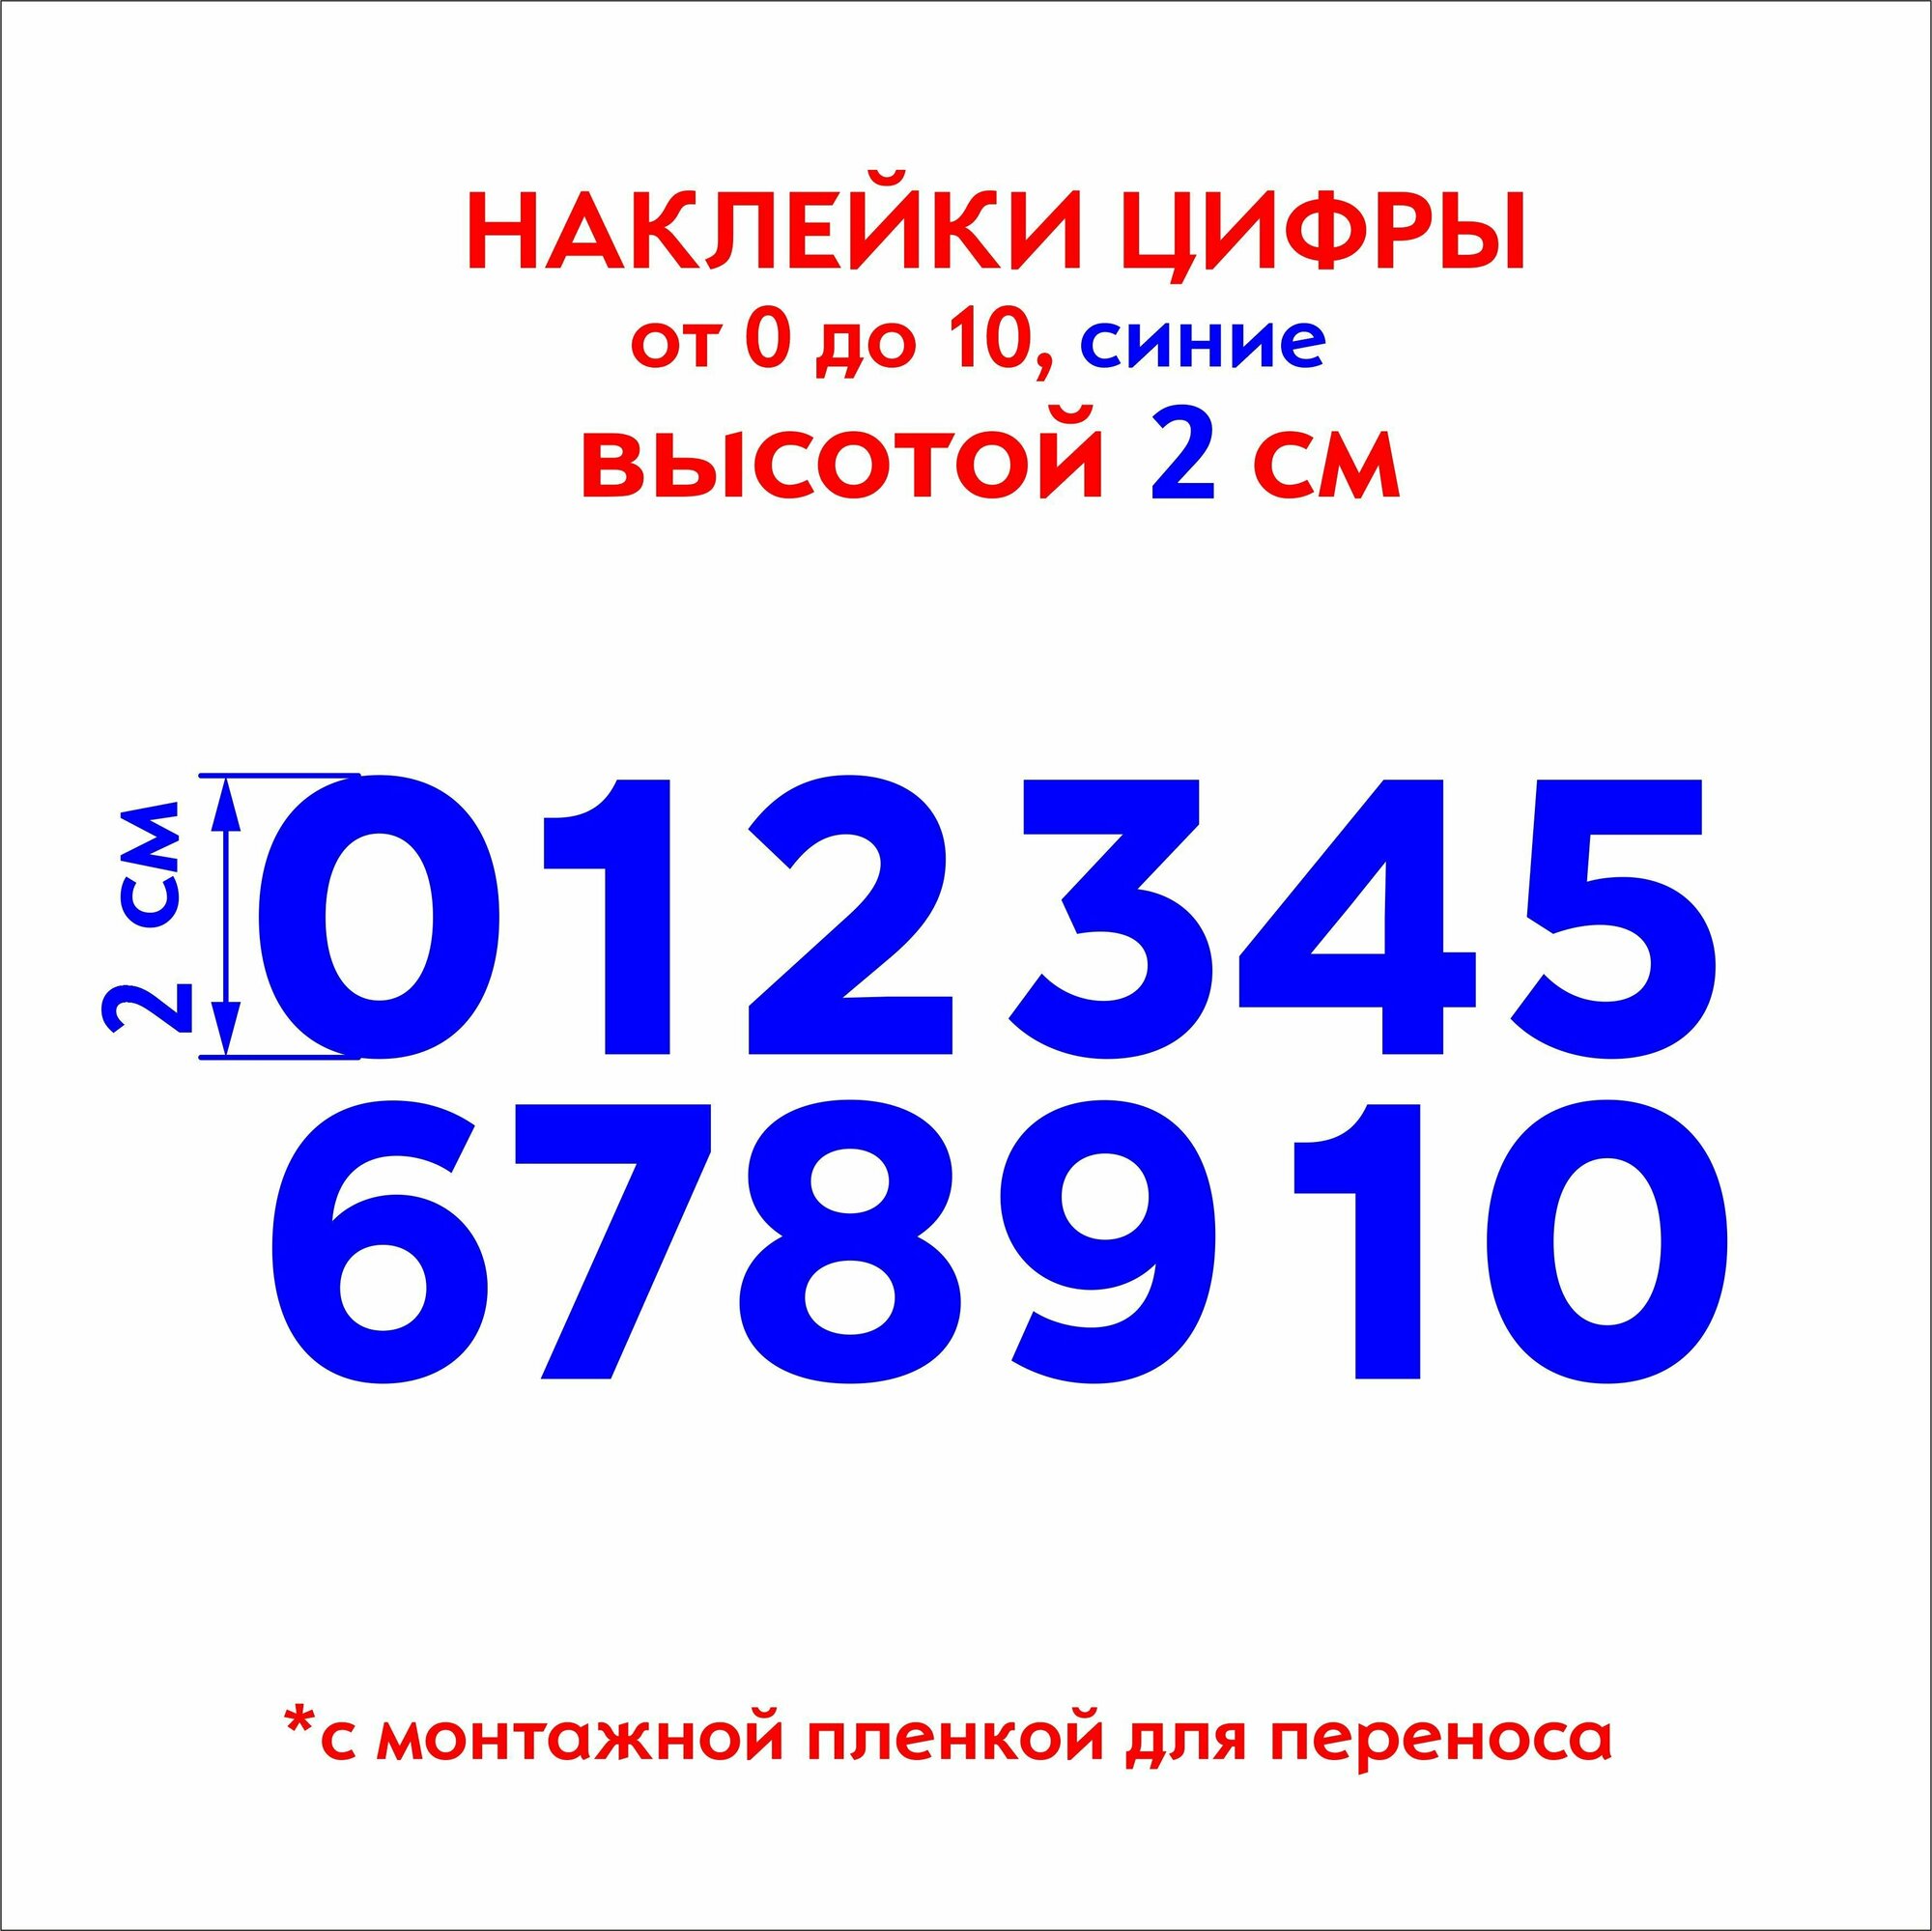 Наклейки цифры (стикеры), наклейка на авто набор цифр, синие, 2 см